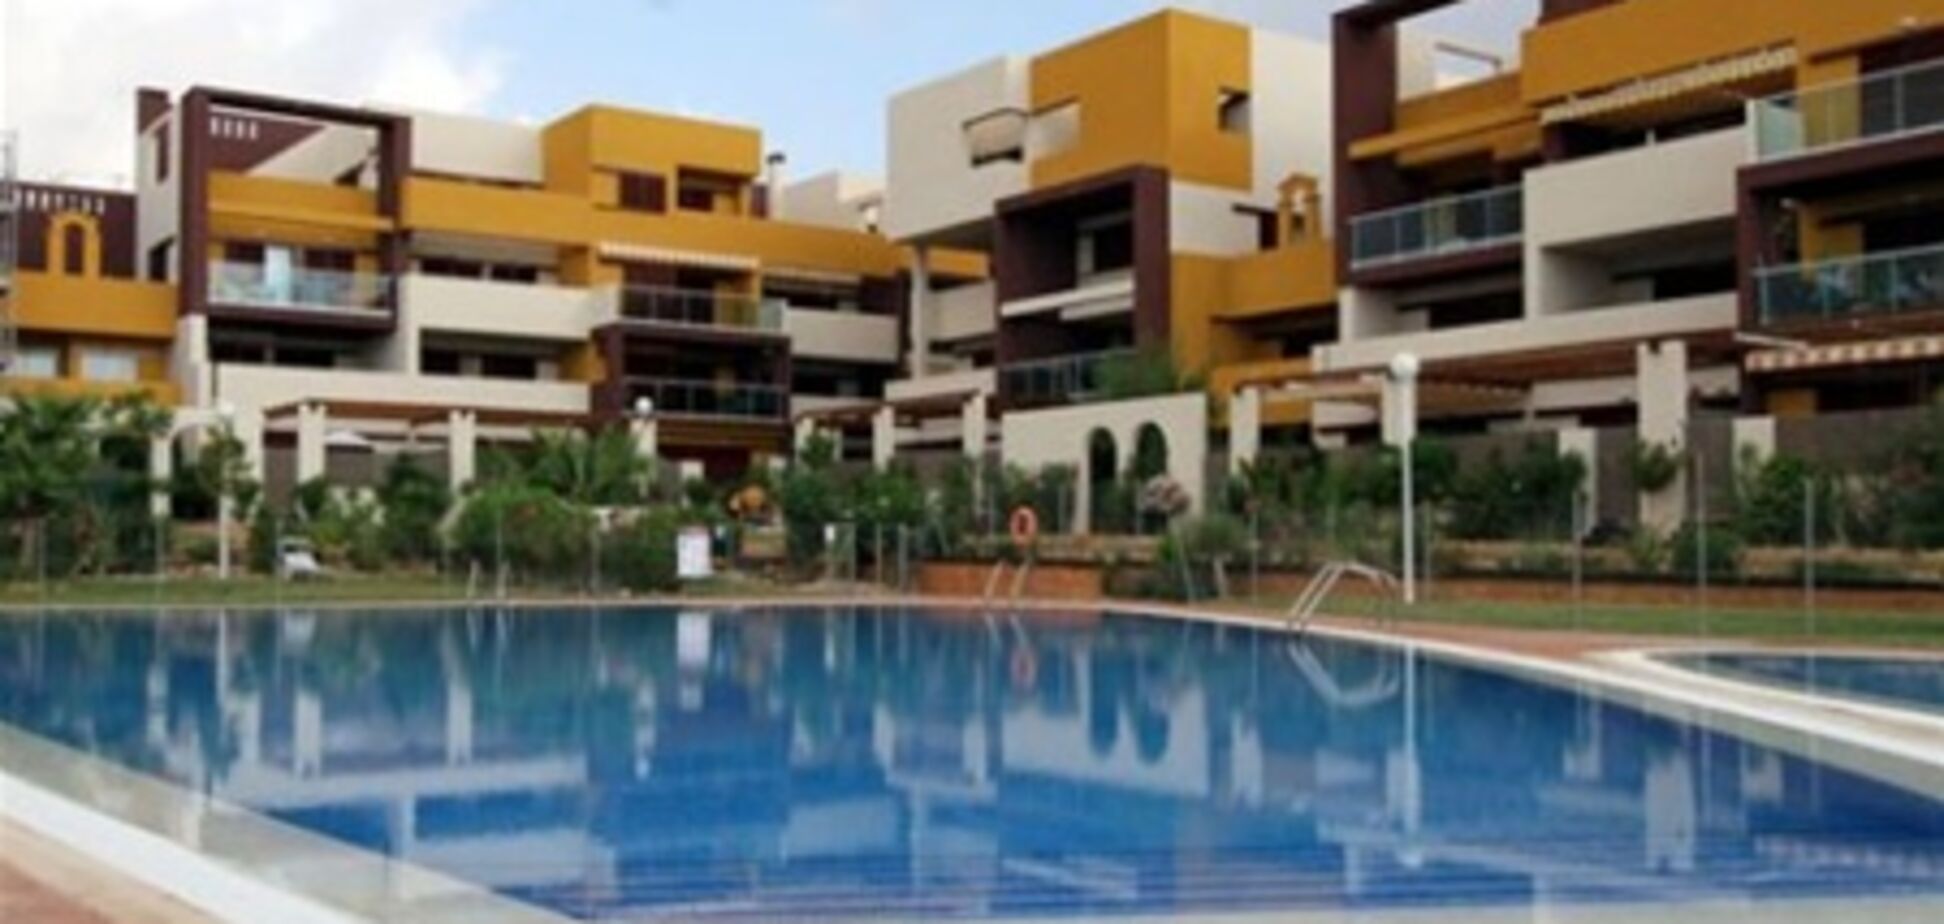 Застройщика в Испании оштрафовали за плохо построенный дом на 180 тыс. евро